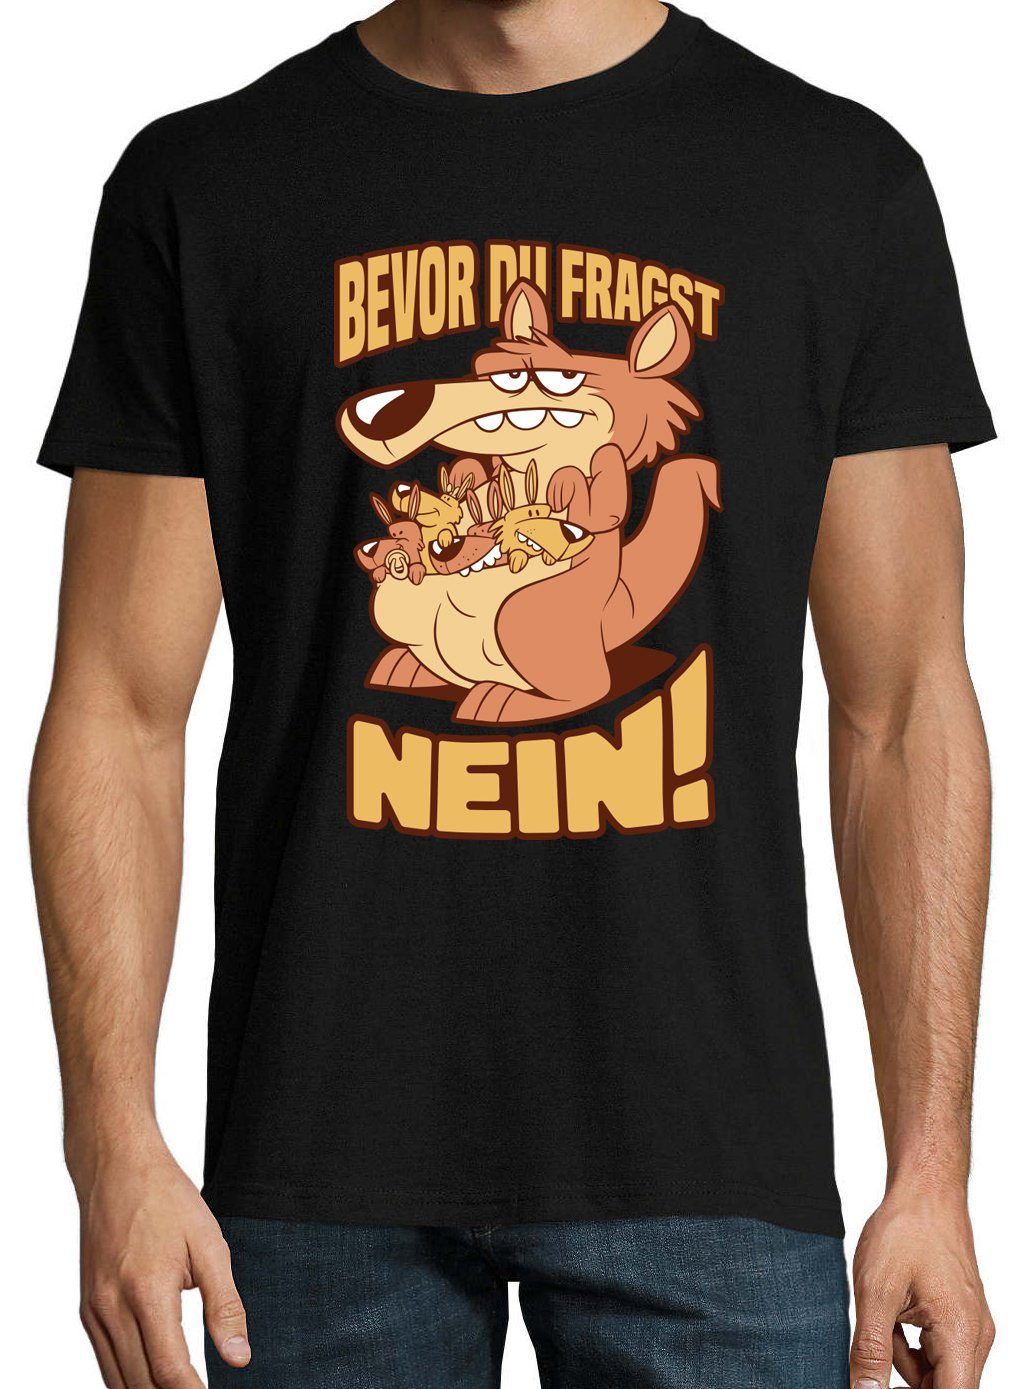 FRAGST Youth Designz Aufdruck Herren DU NEIN T-Shirt lustigem BEVOR Print-Shirt Spruch mit Schwarz